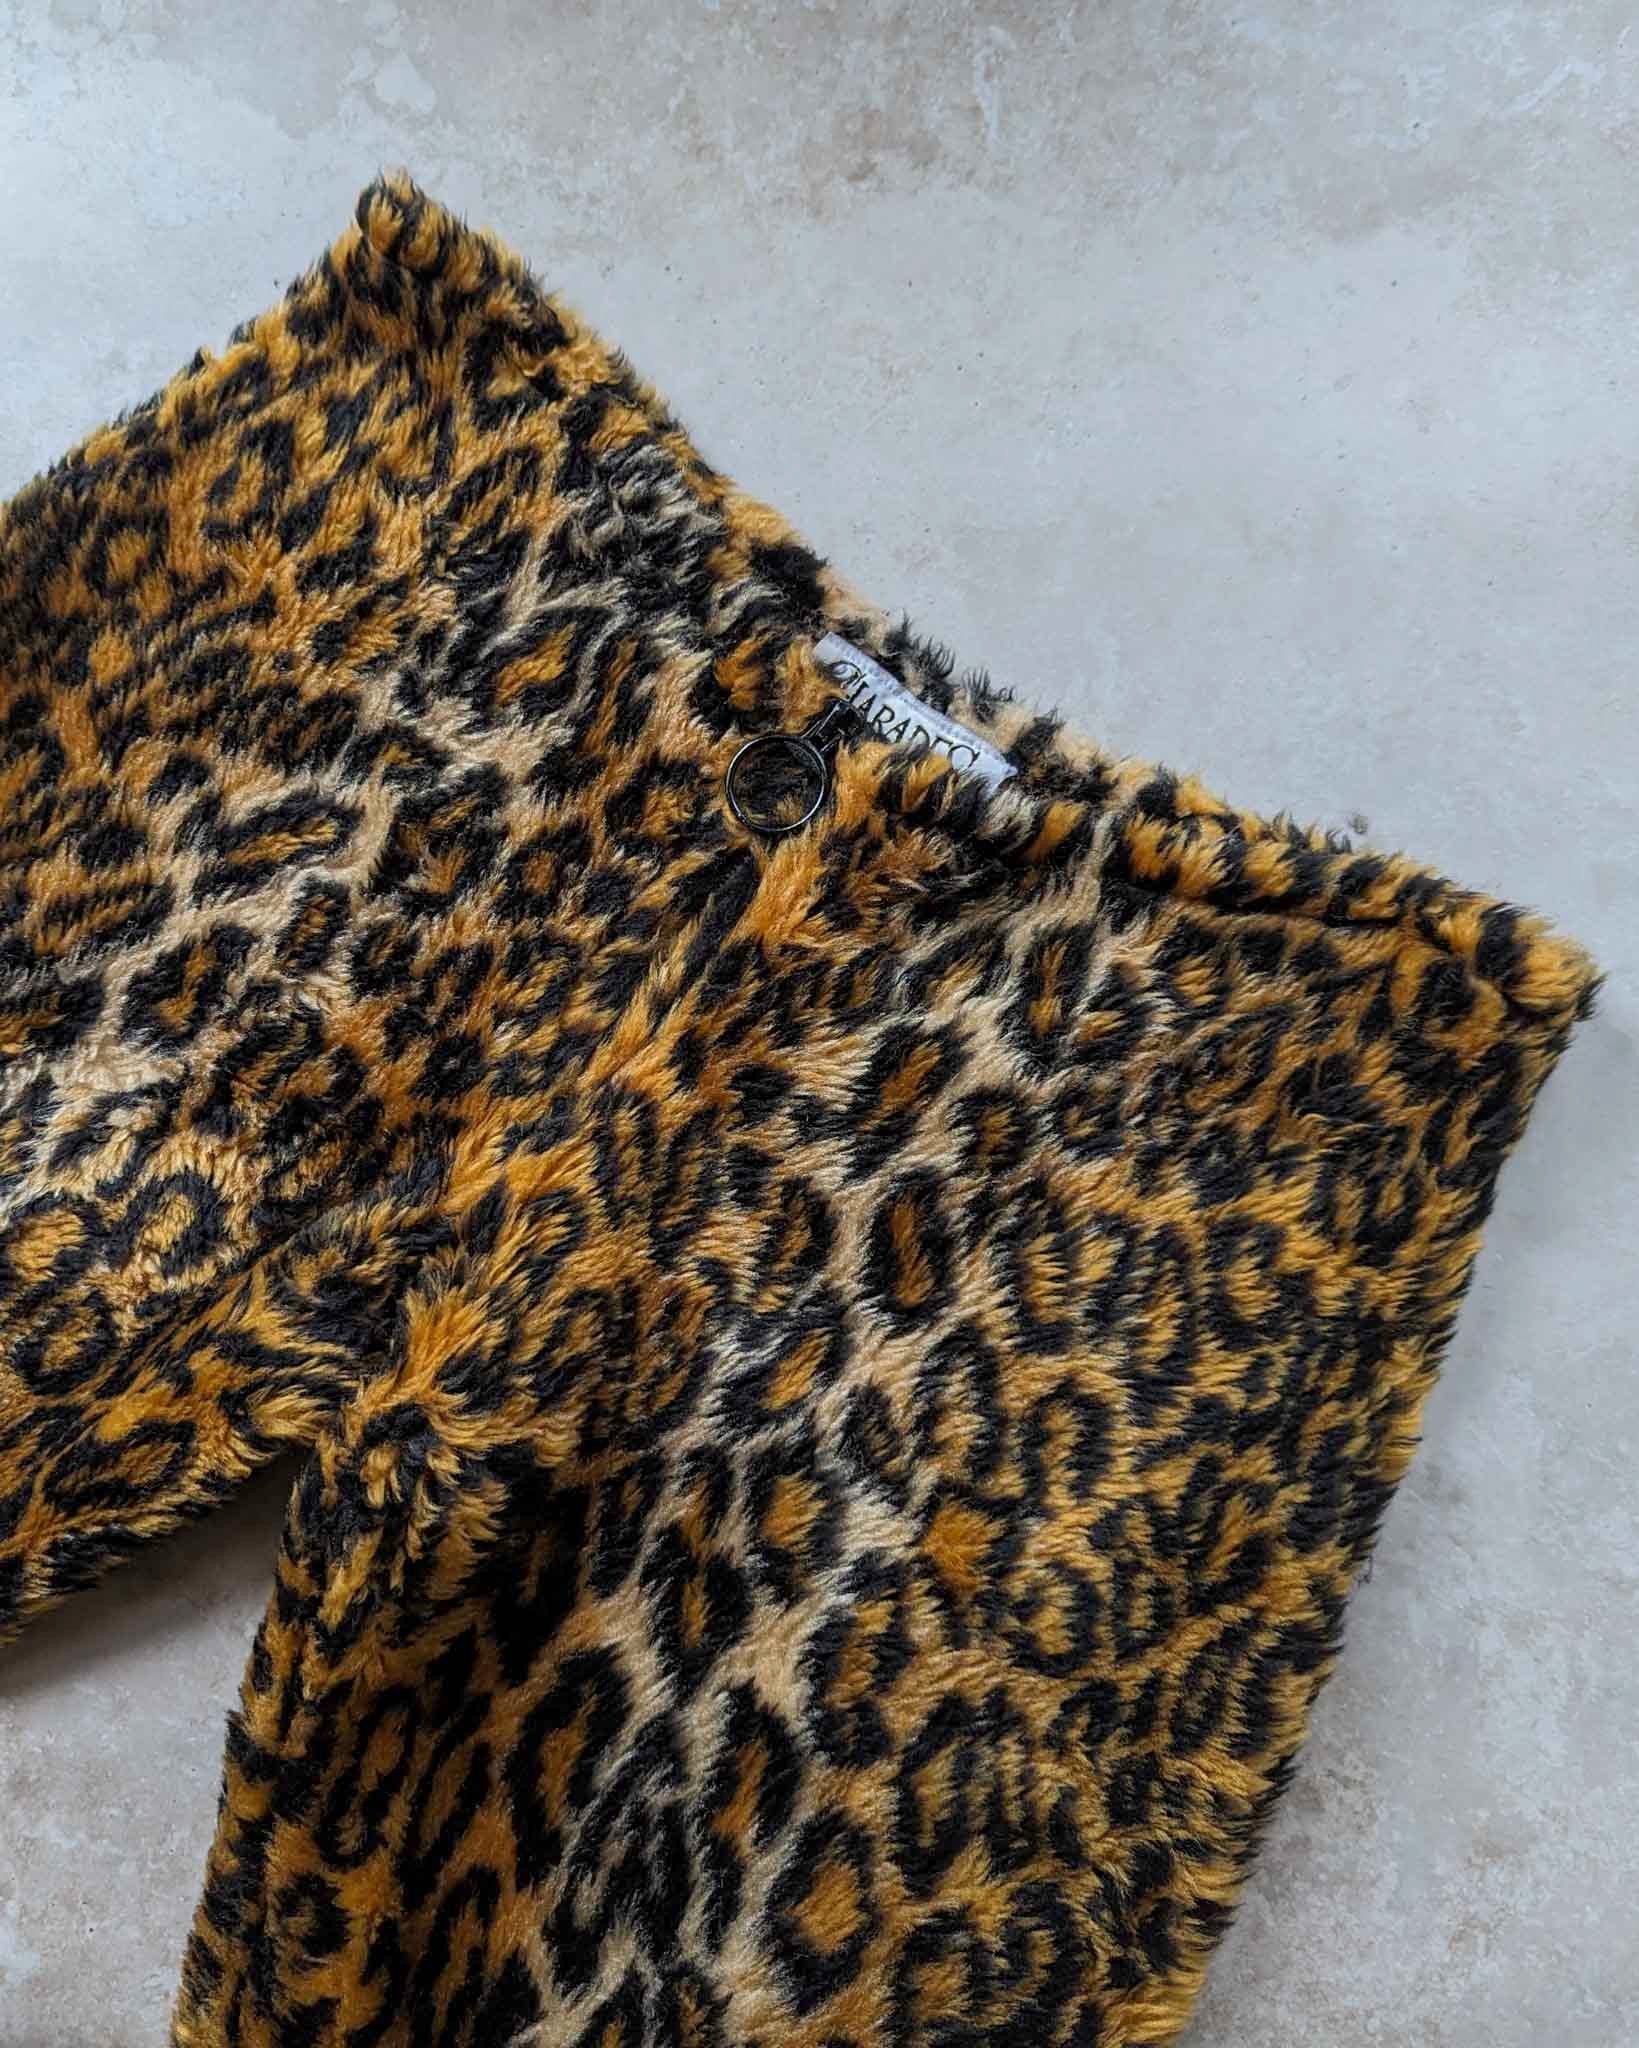 Leopard Print Pants